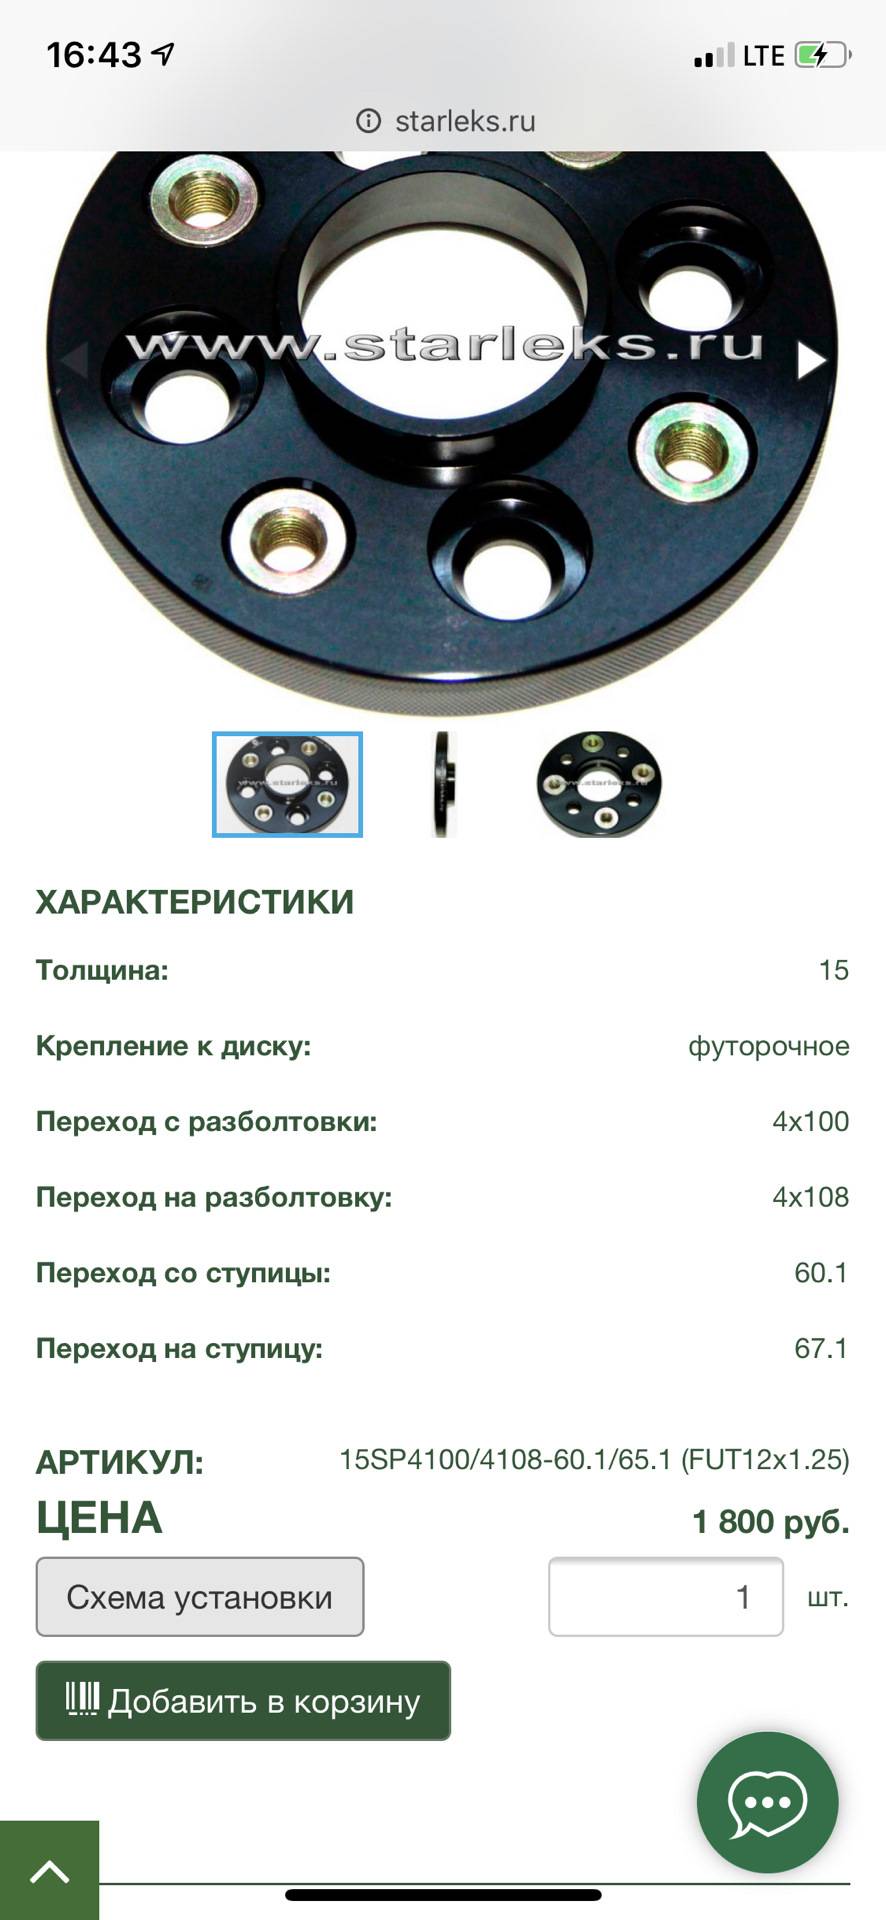 Разболтовка колесных дисков: ваз, "шевроле круз", "дэу нексия", "хендай акцент"... :: syl.ru